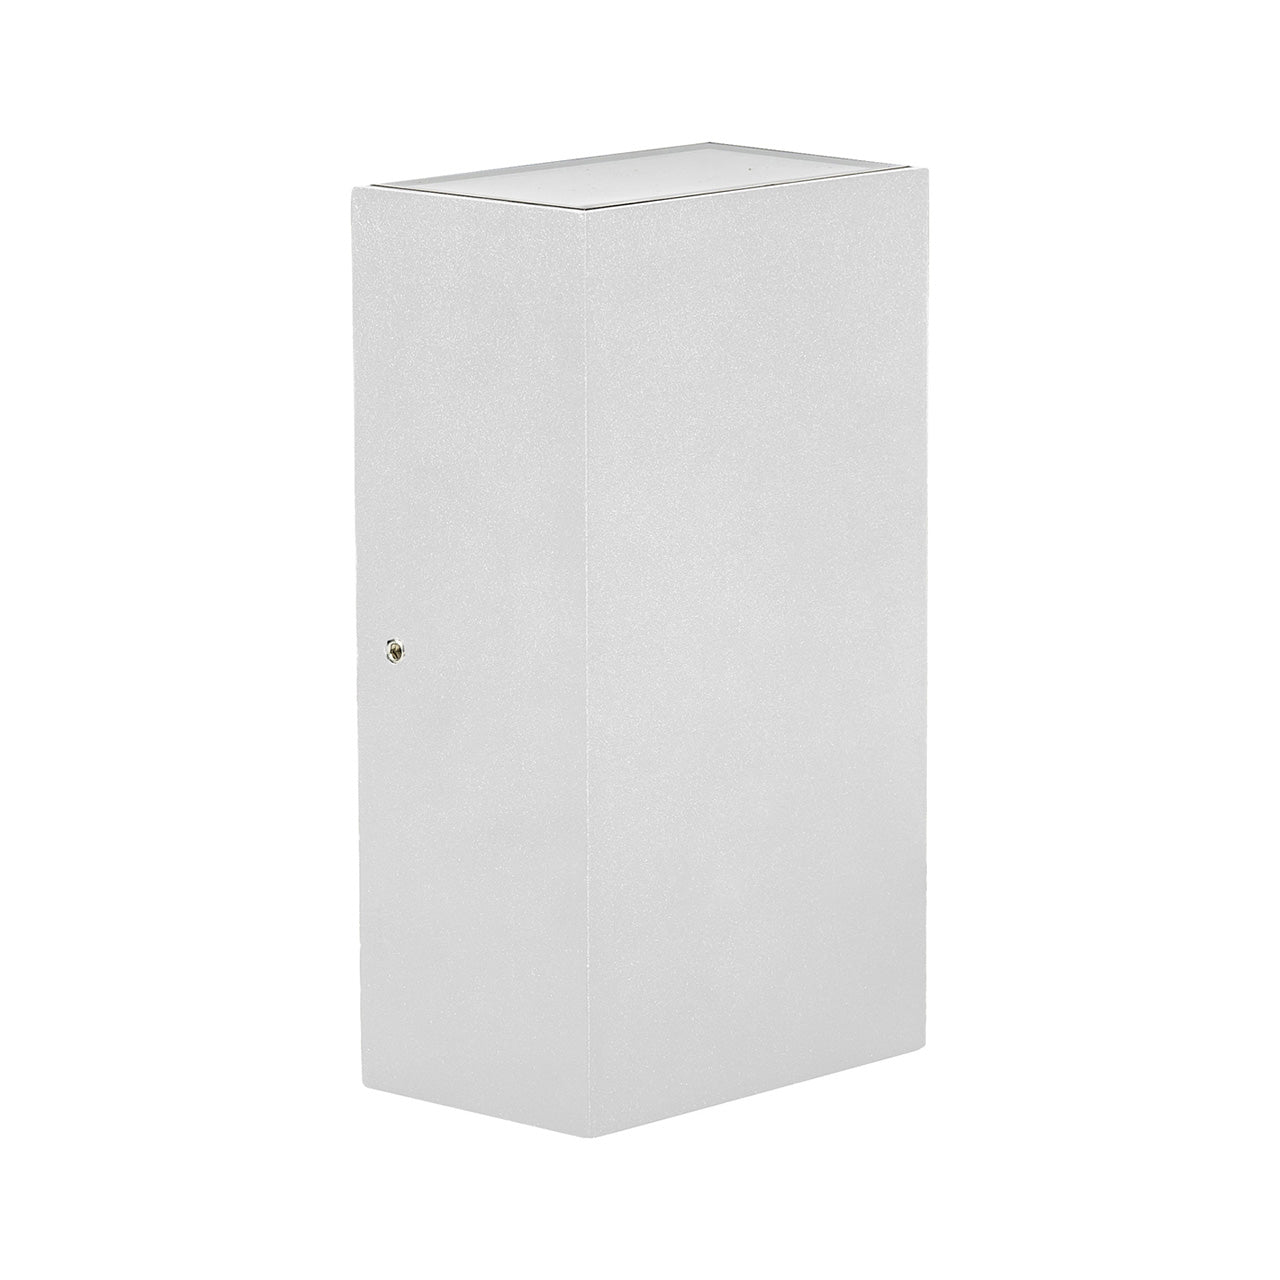 HV3634-WHT - Platz White Up & Down LED Wall Light